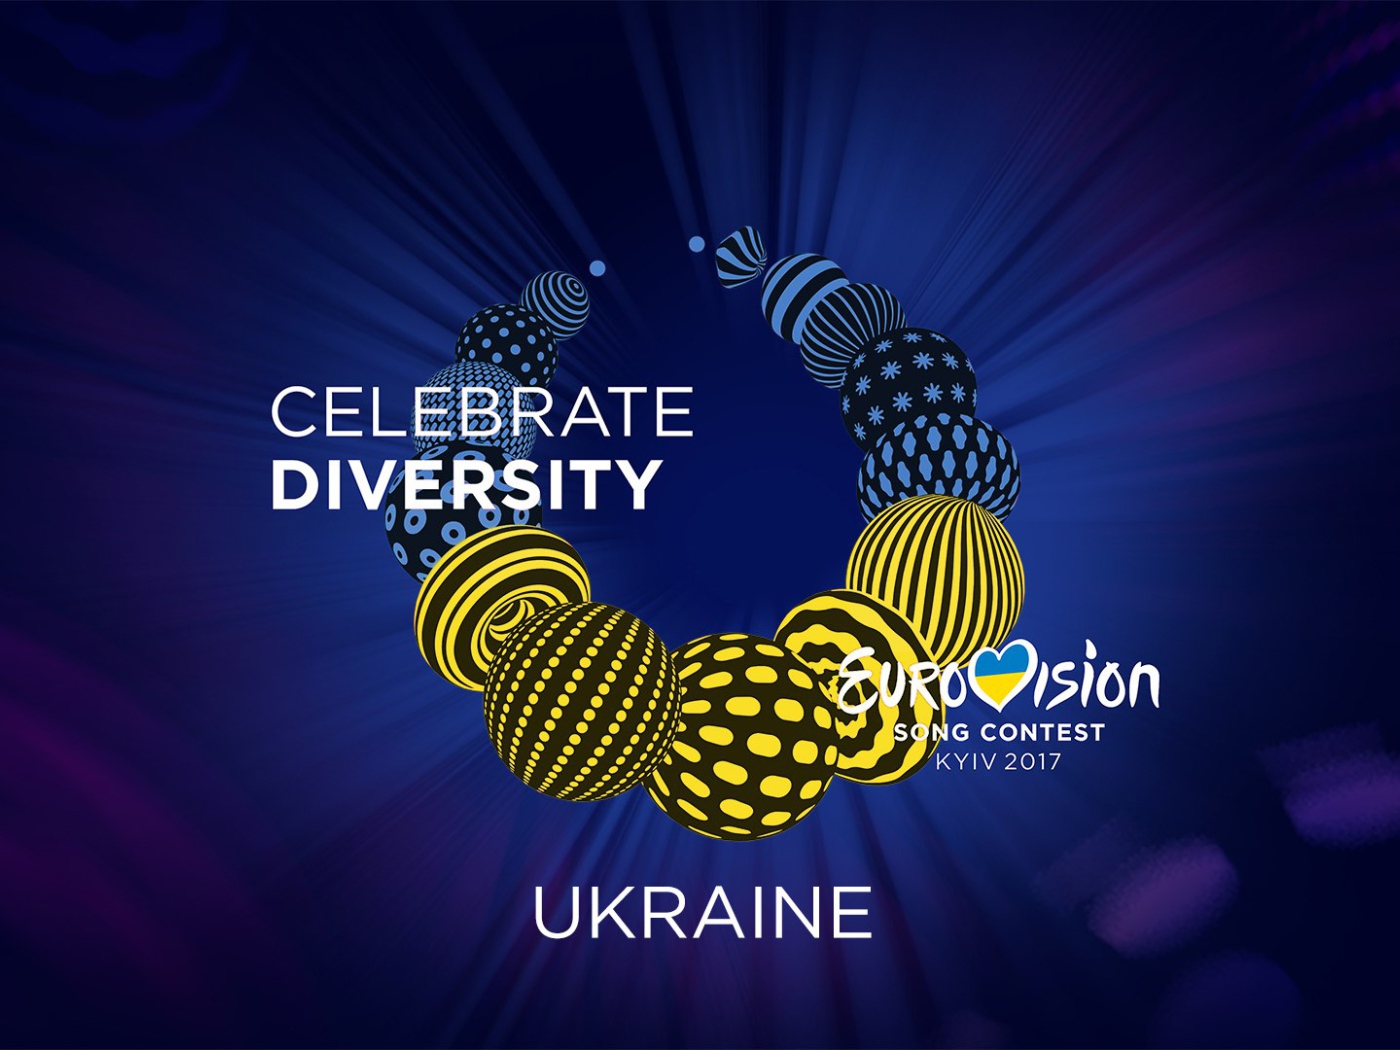 Логотип музыкального конкурса Евровидение, Киев 2017 